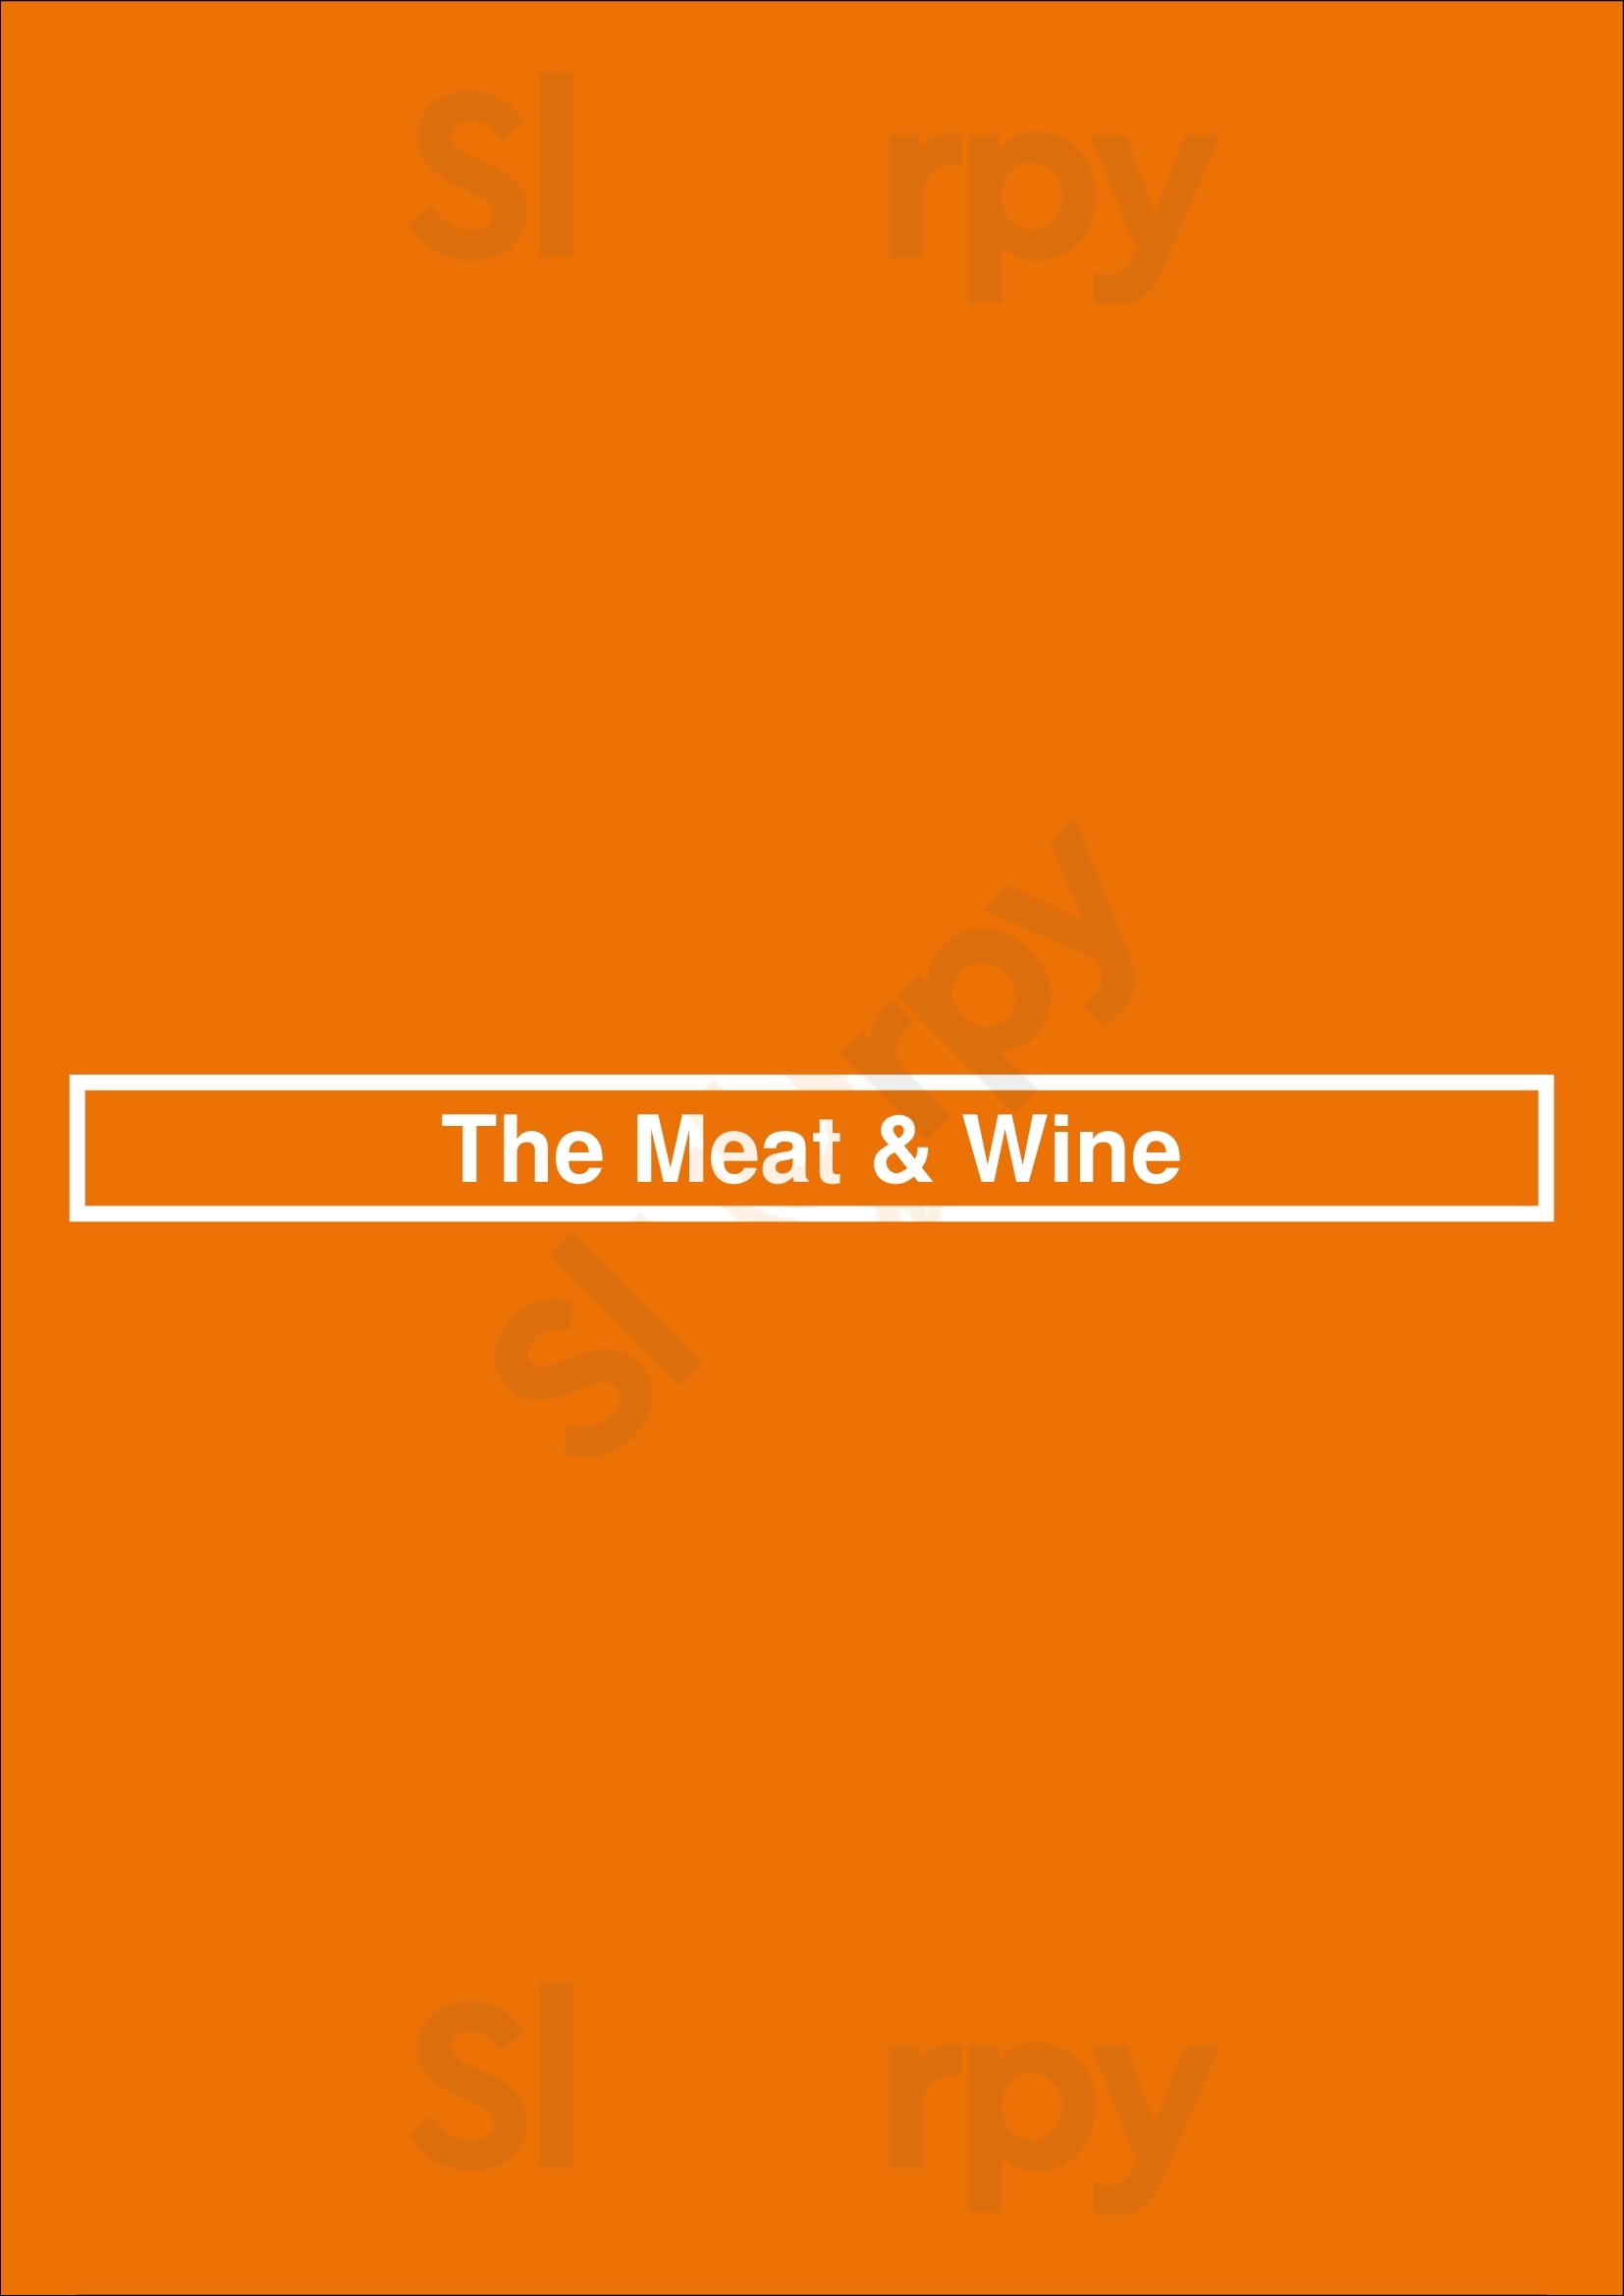 The Meat & Wine Co Perth Perth Menu - 1